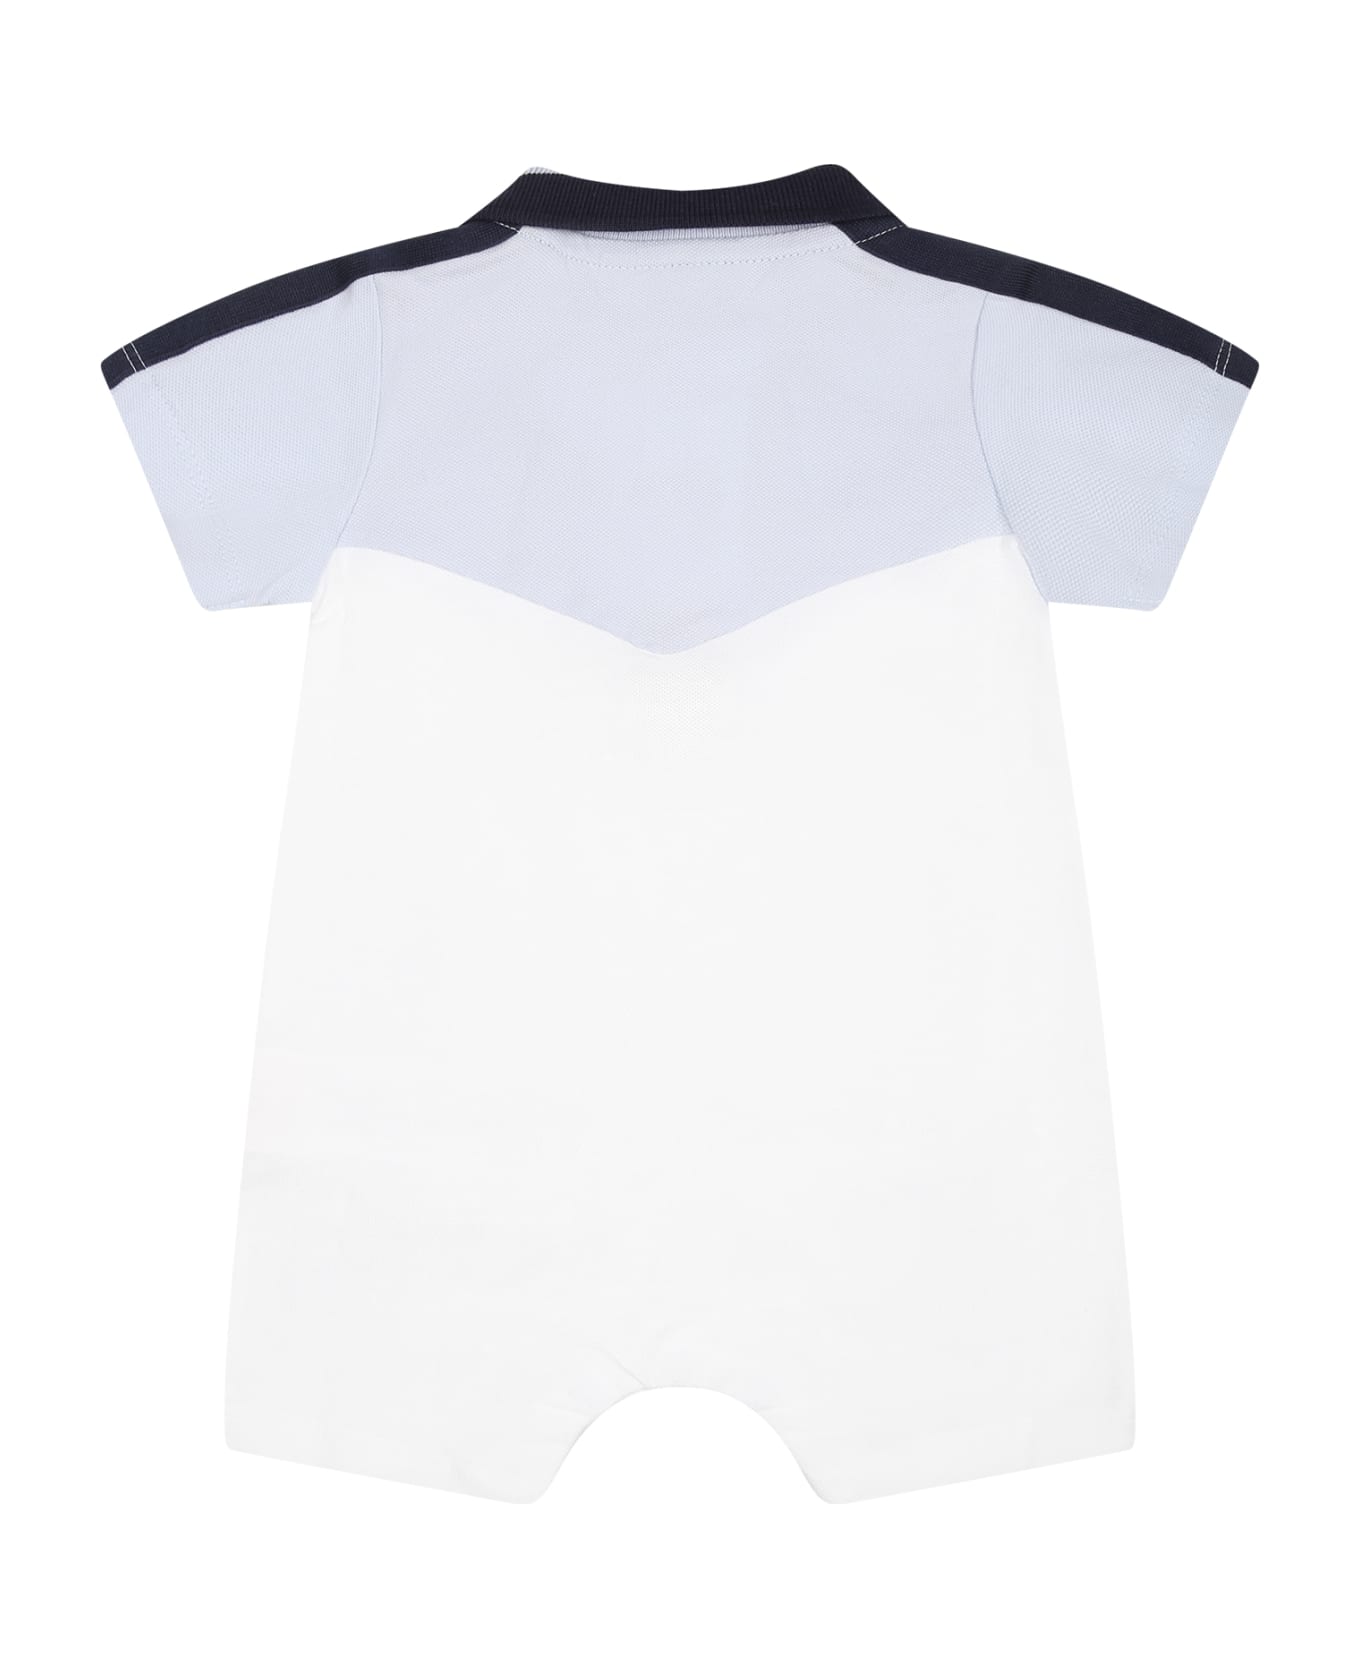 Hugo Boss White Romper For Baby Boy With Logo - White